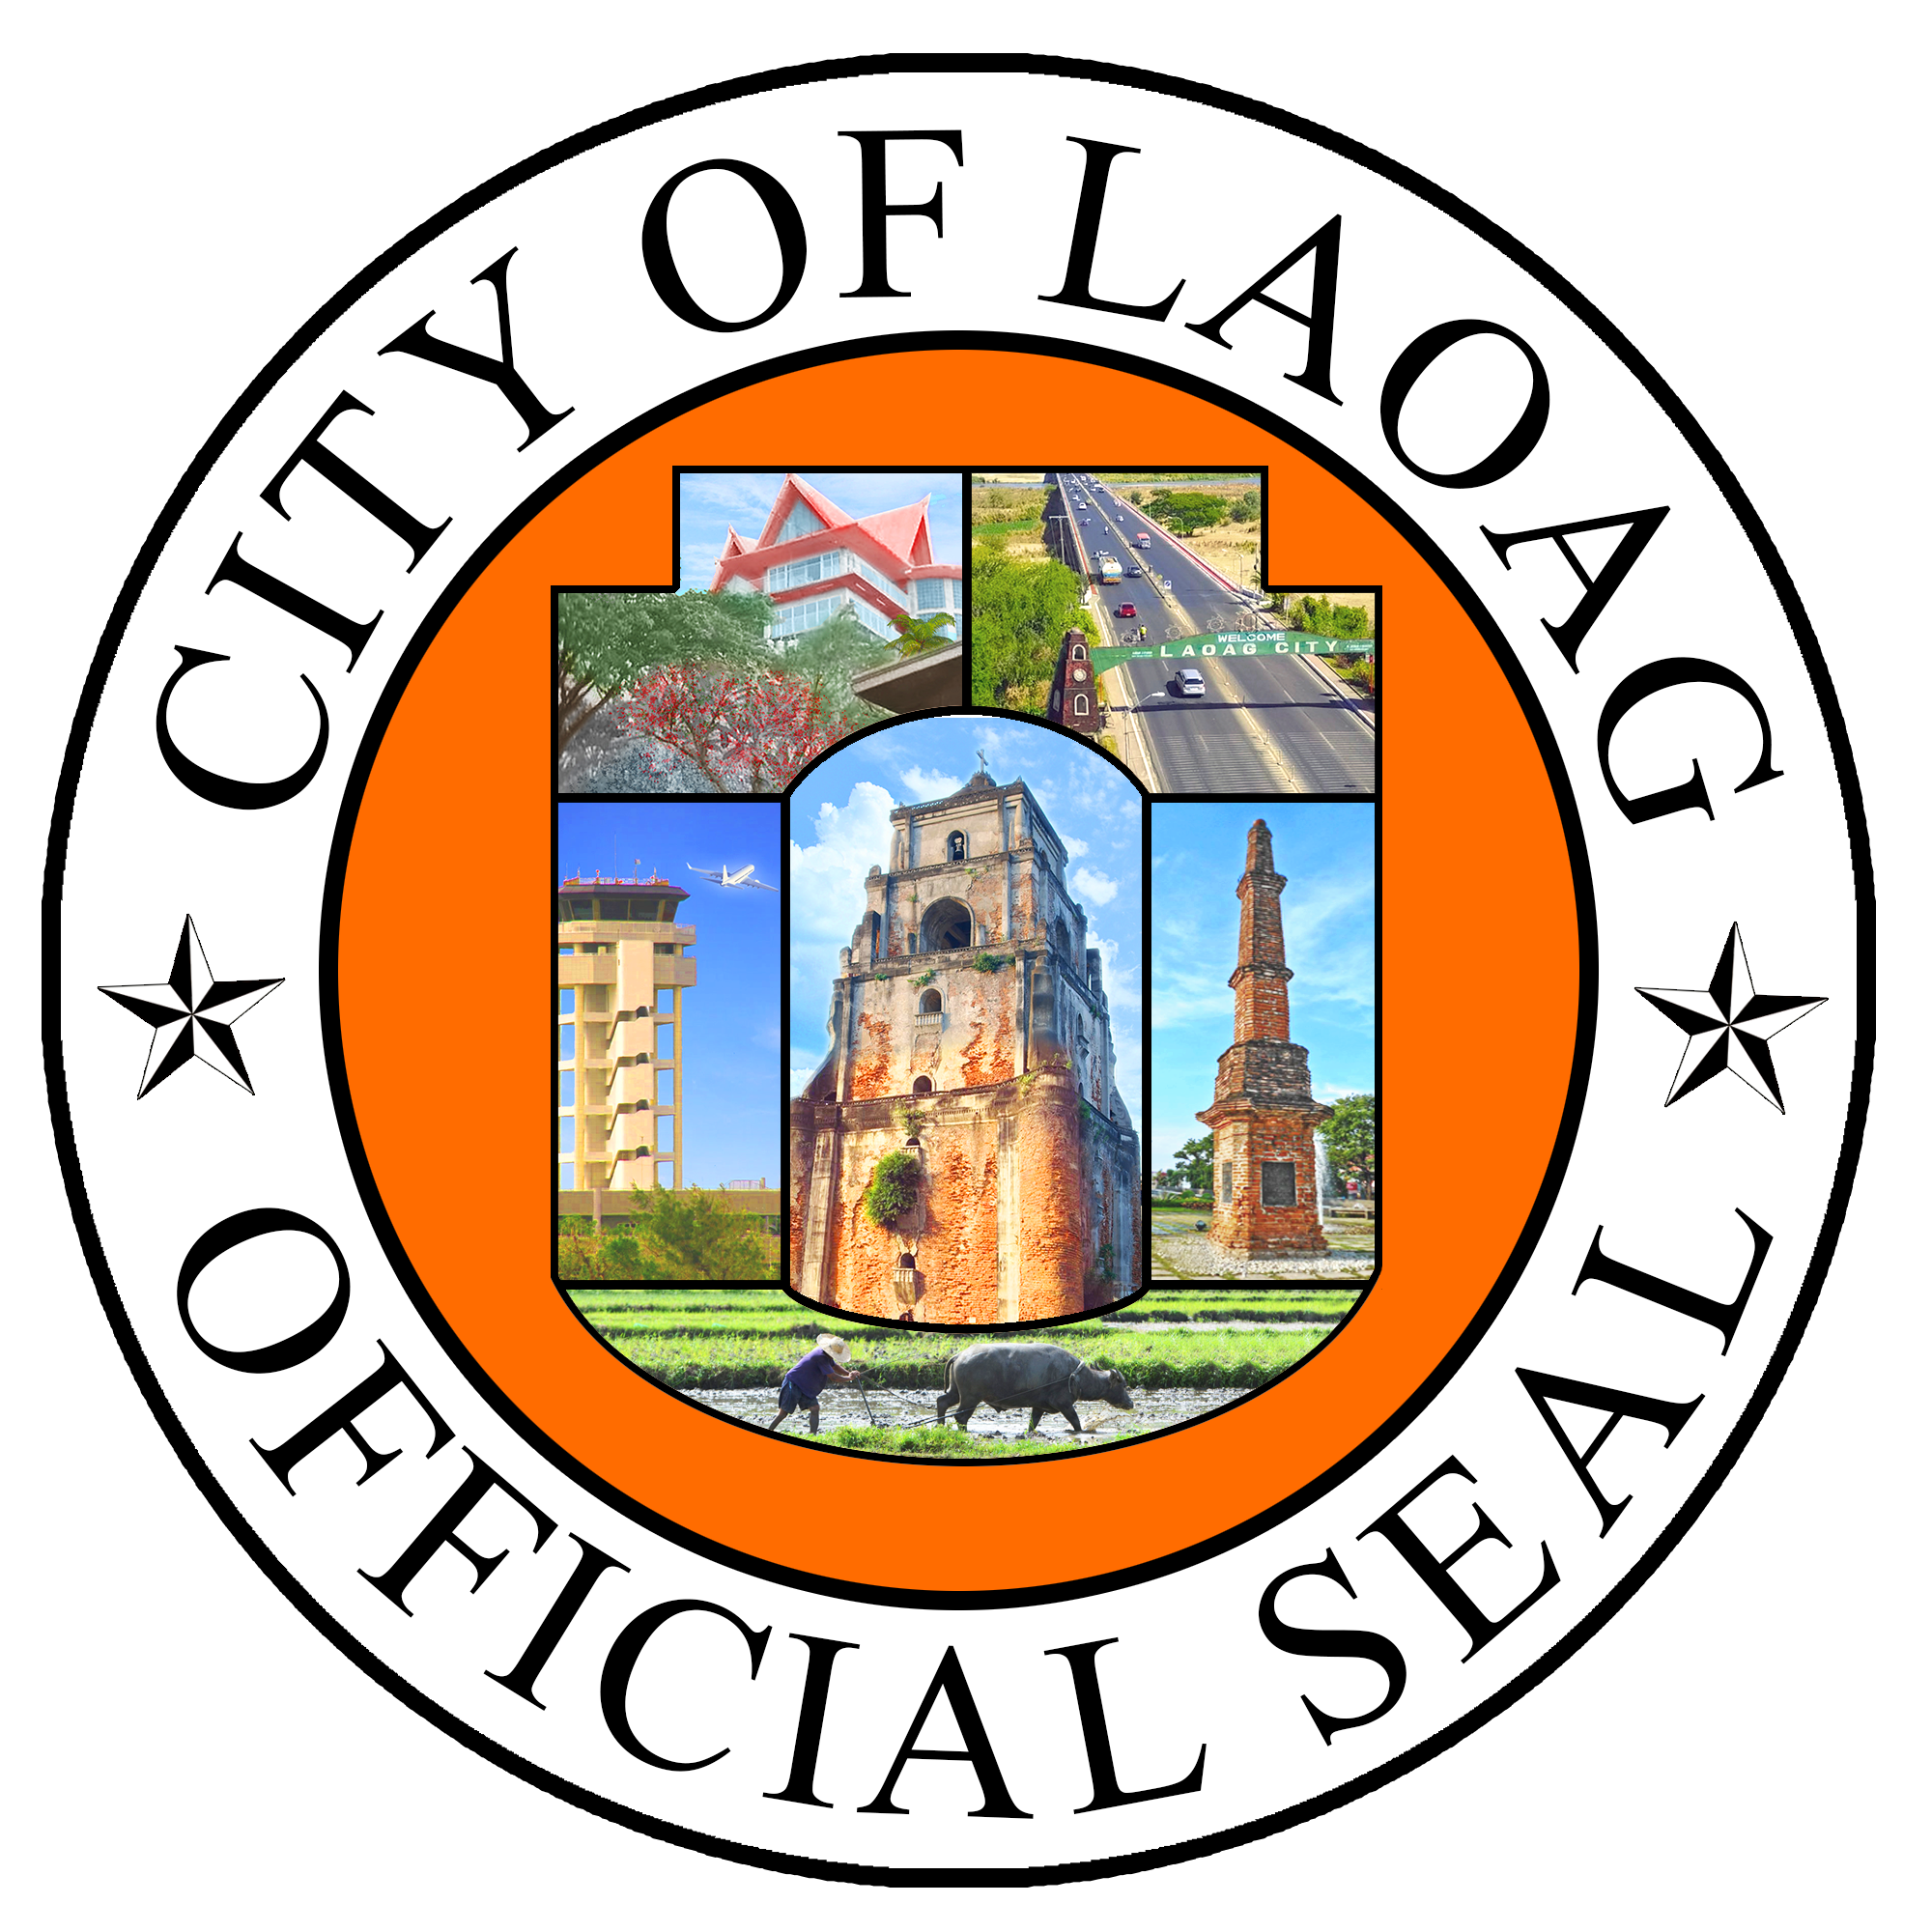 laoag city tourism office